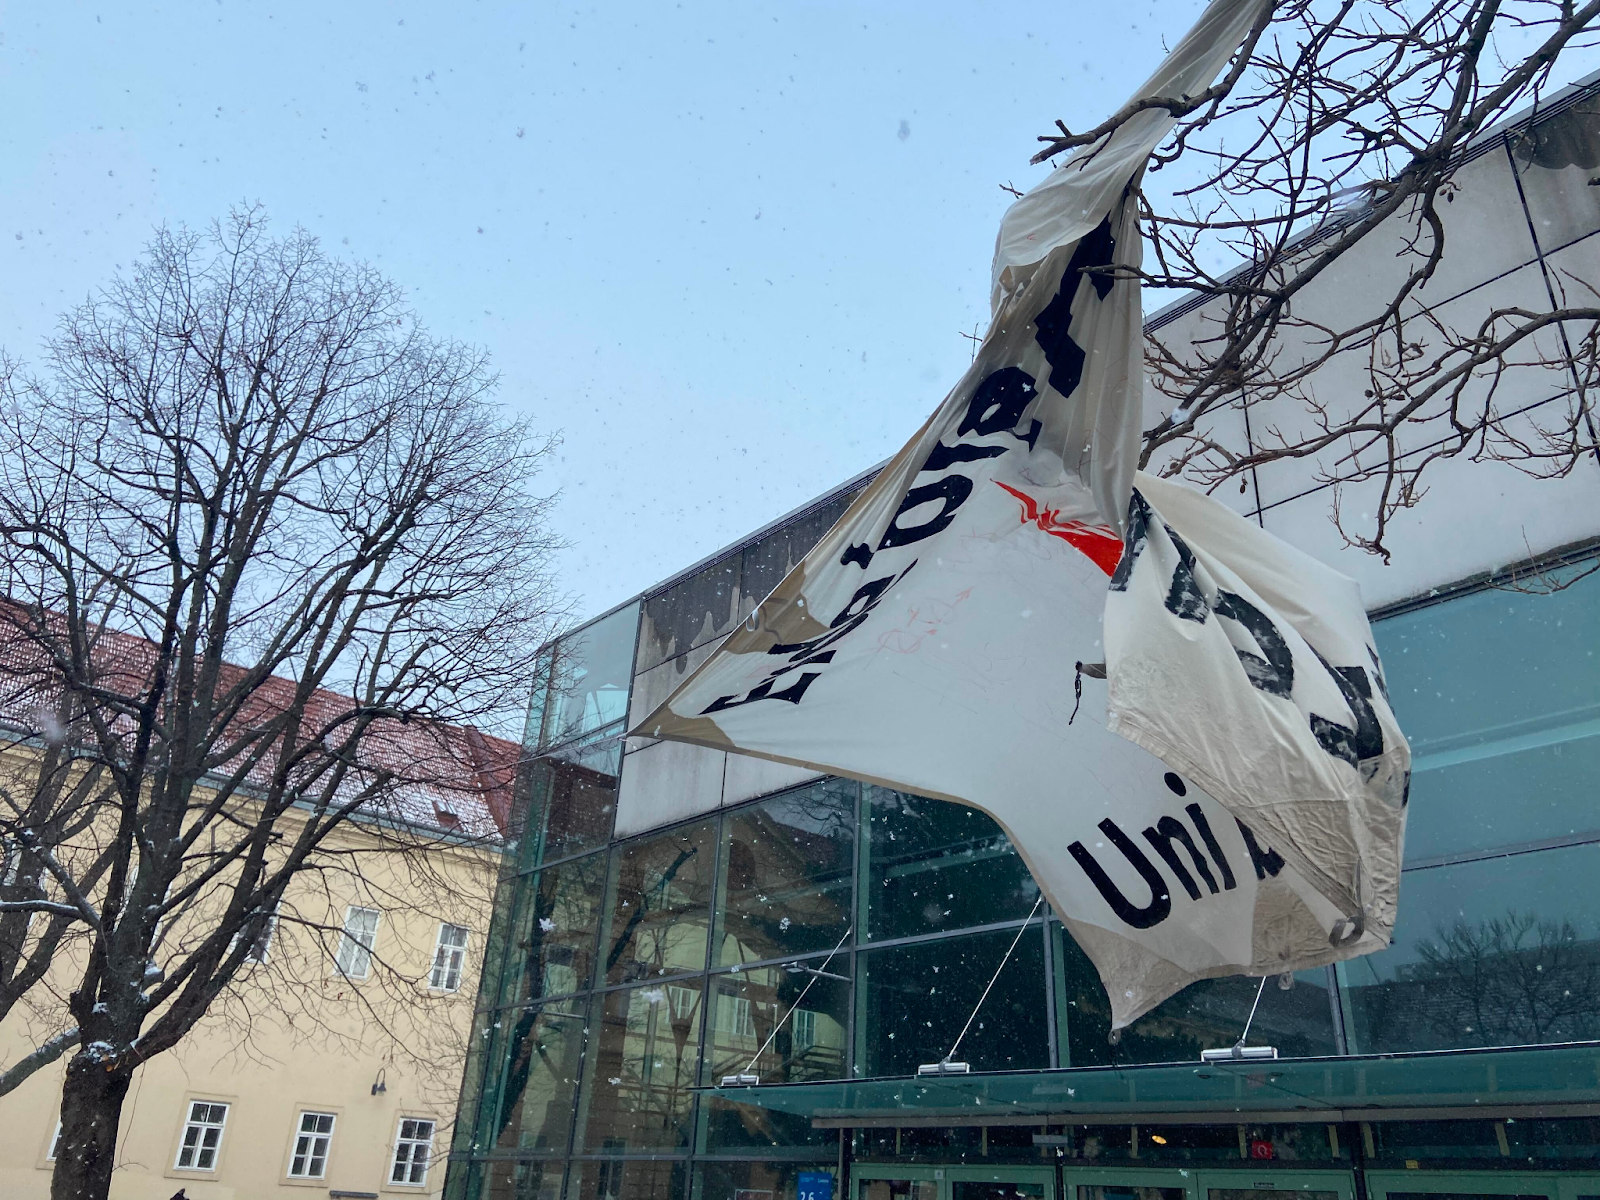 Das Banner der Bewegung "Erde Brennt" wird abgenommen und hängt halb zwischen Bäumen und dem Uni-Gebäude. Es schneit leicht.